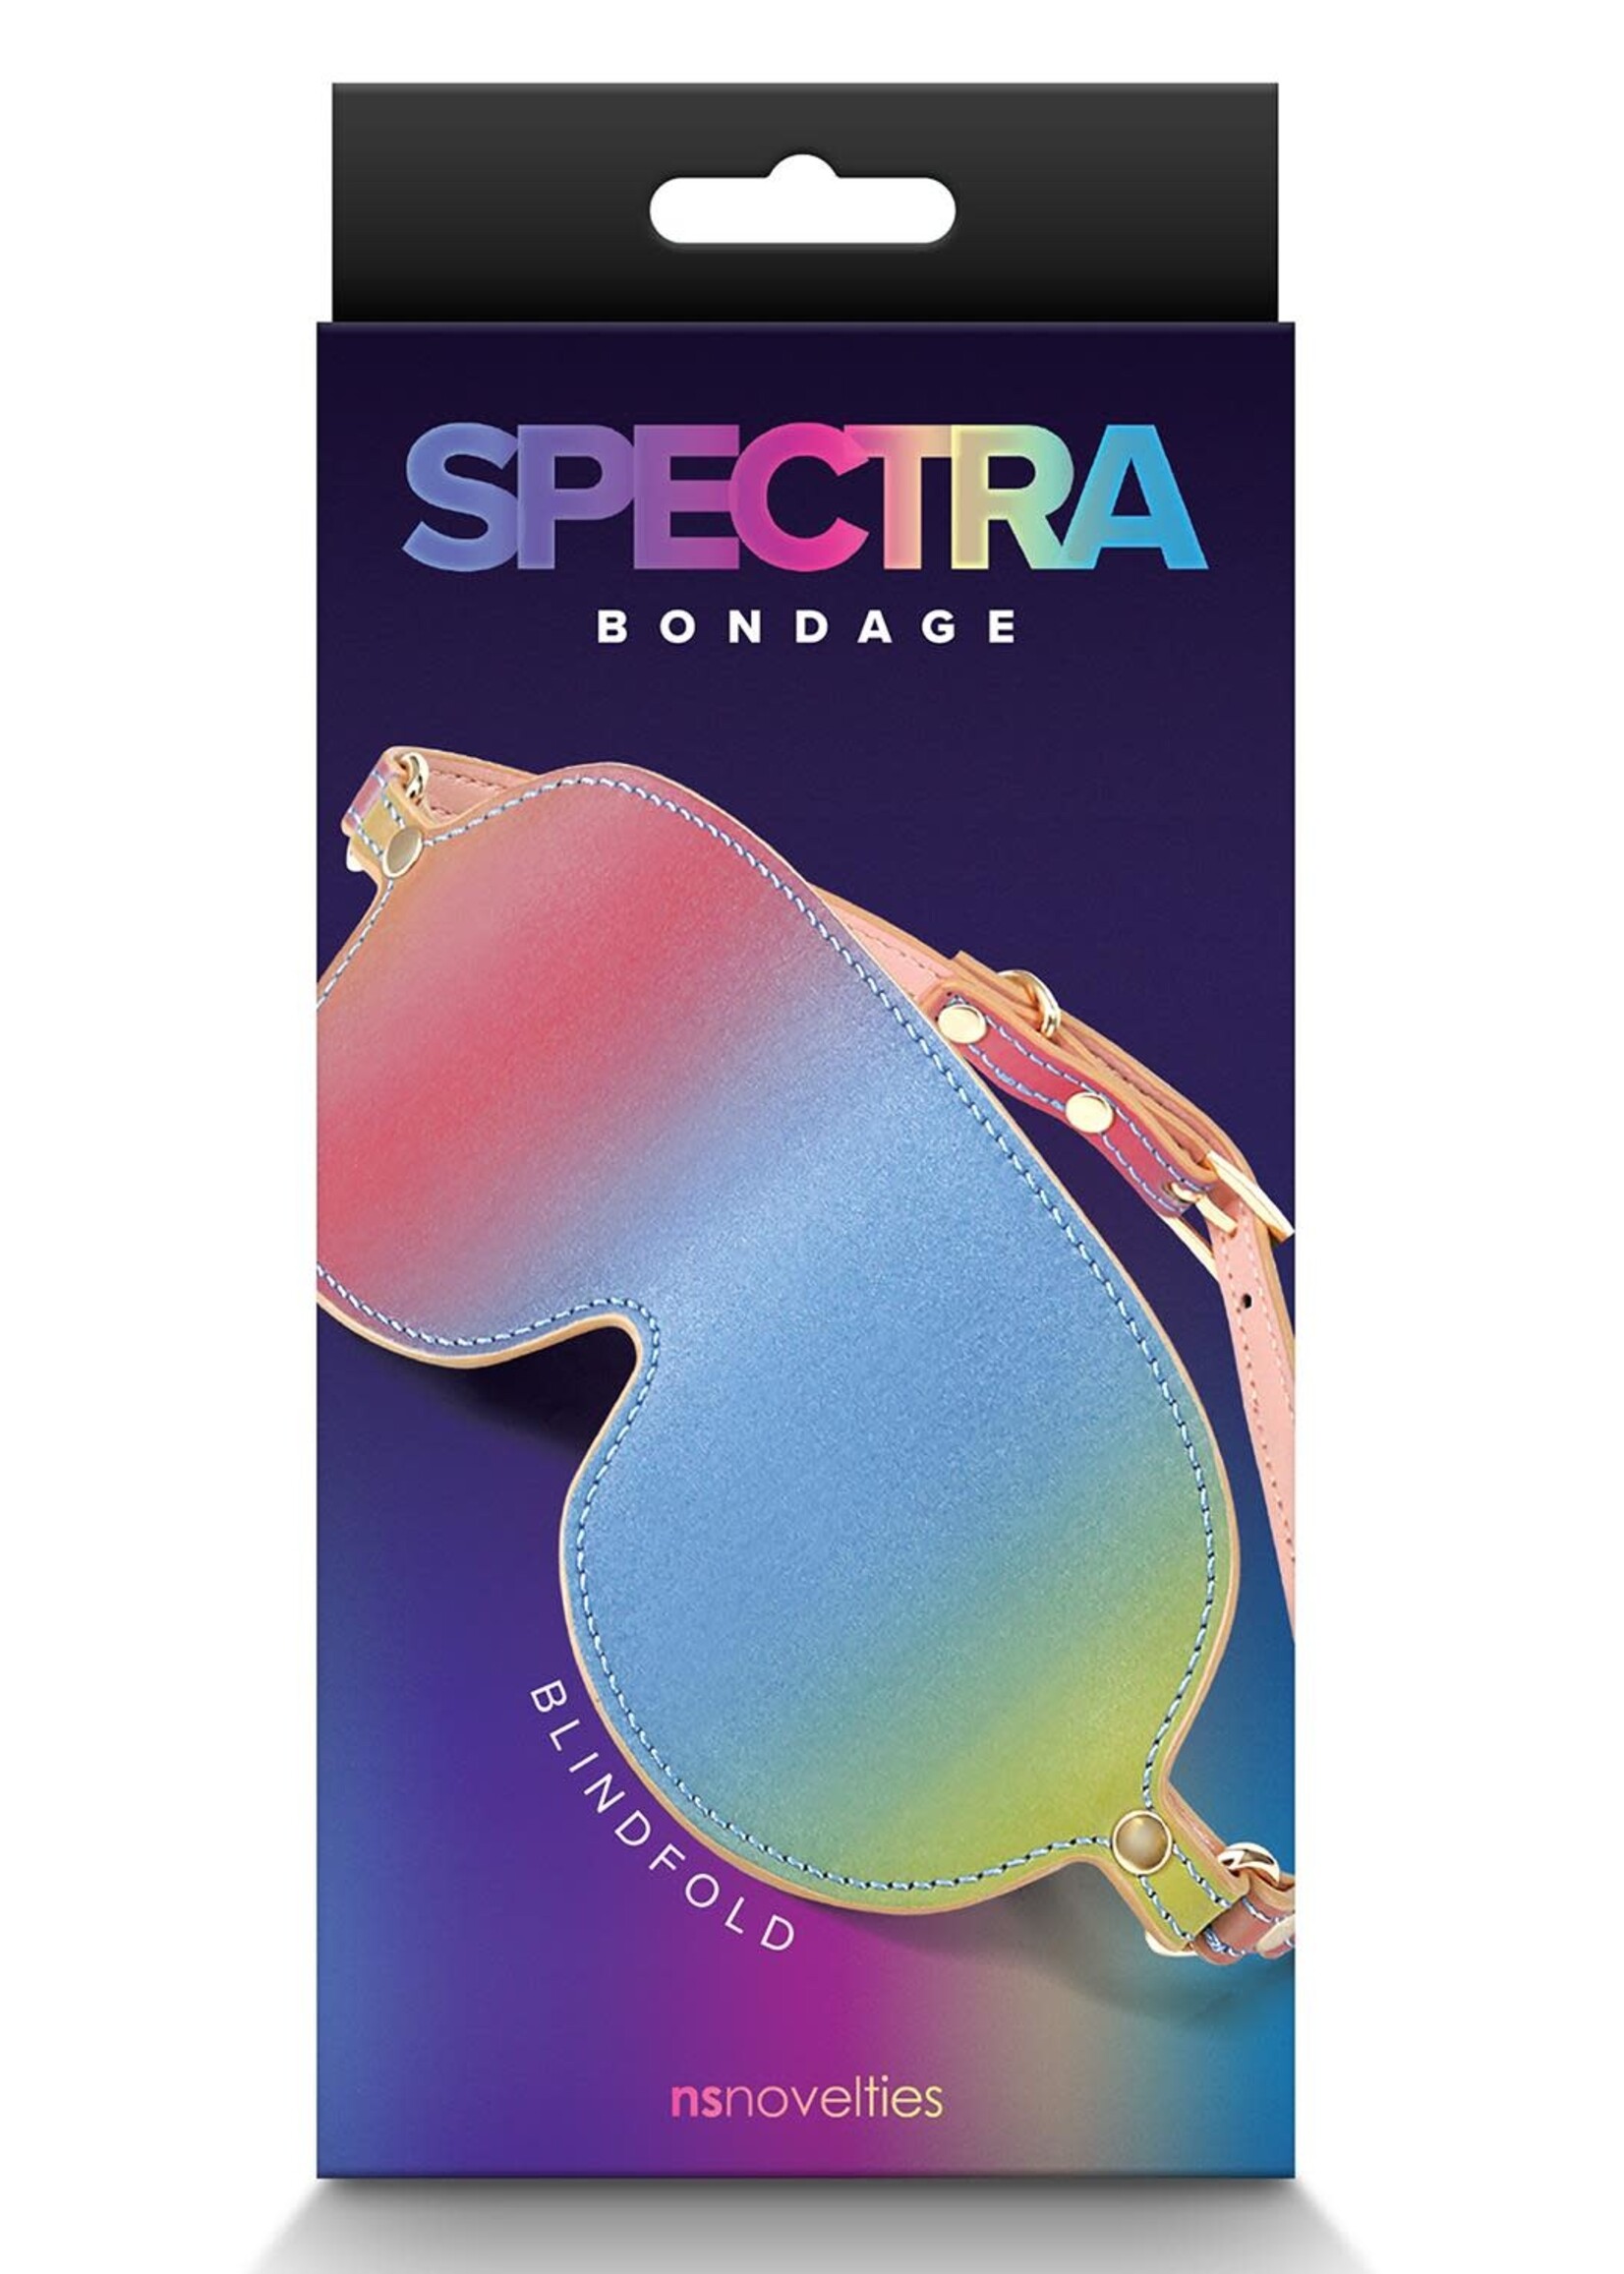 NS Novelties Spectra bondage blindfold rainbow